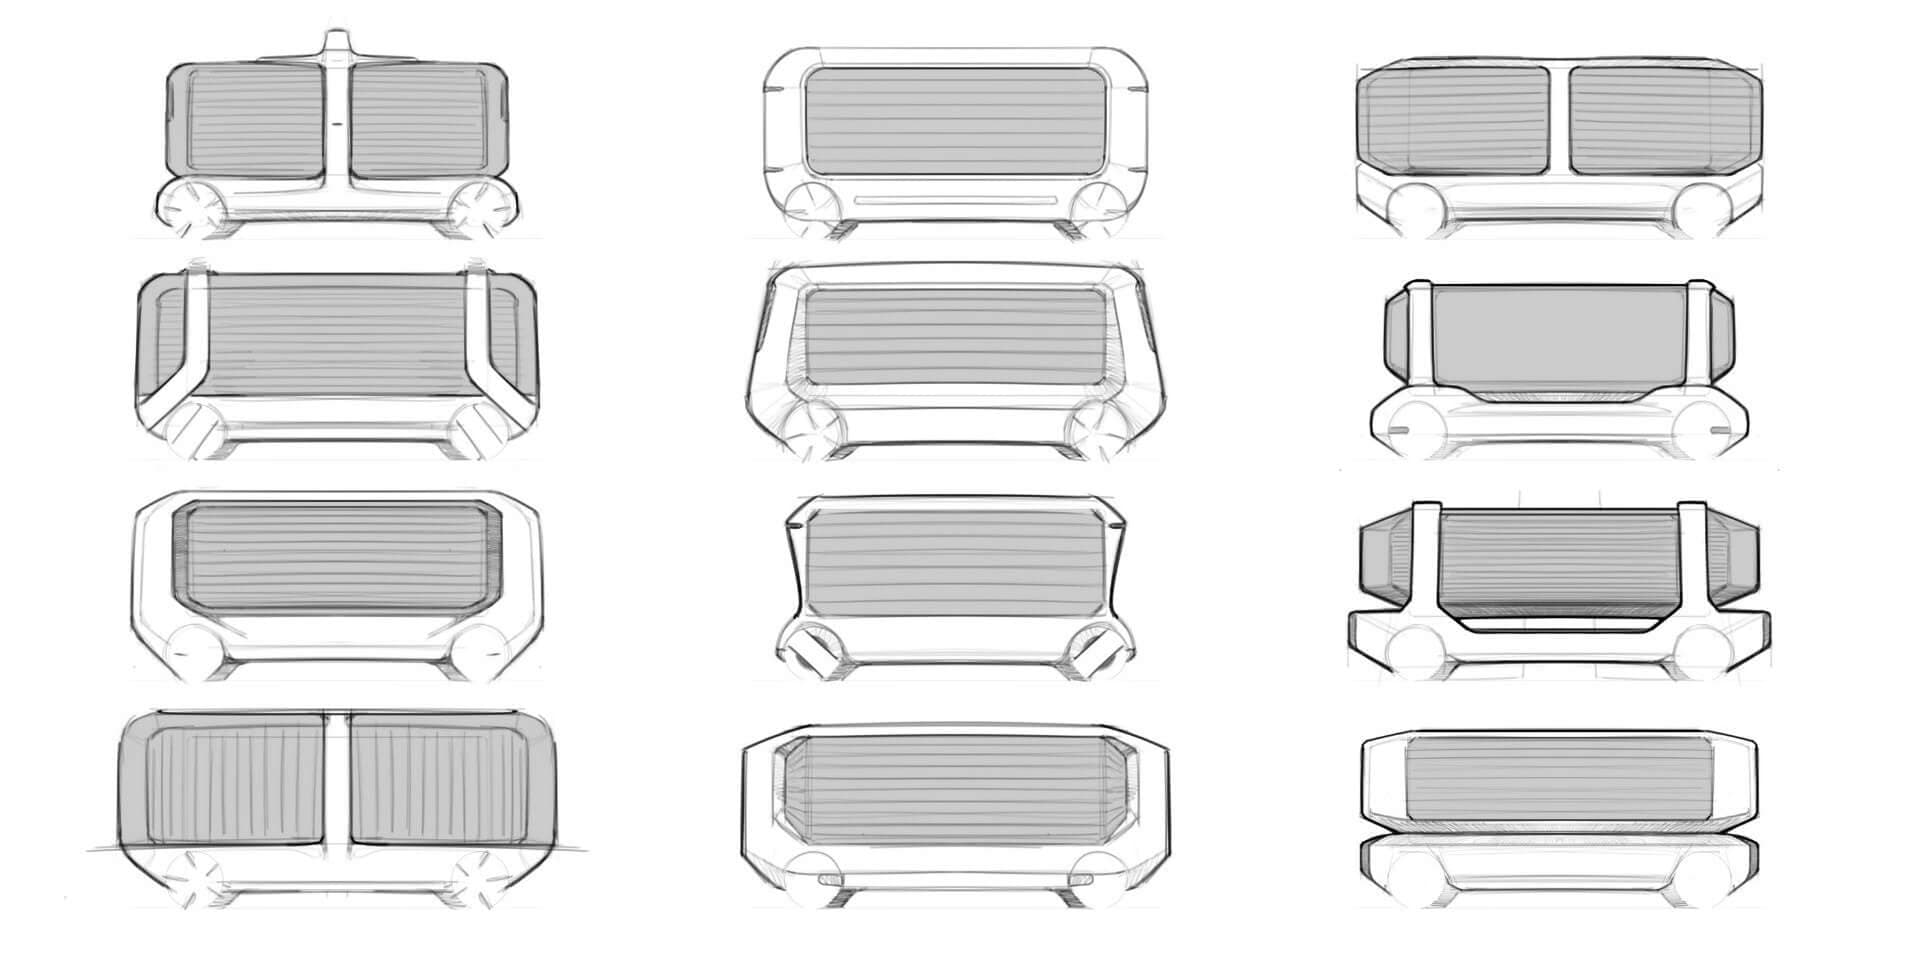 Conceptual sketches of autonomous delivery vehicles